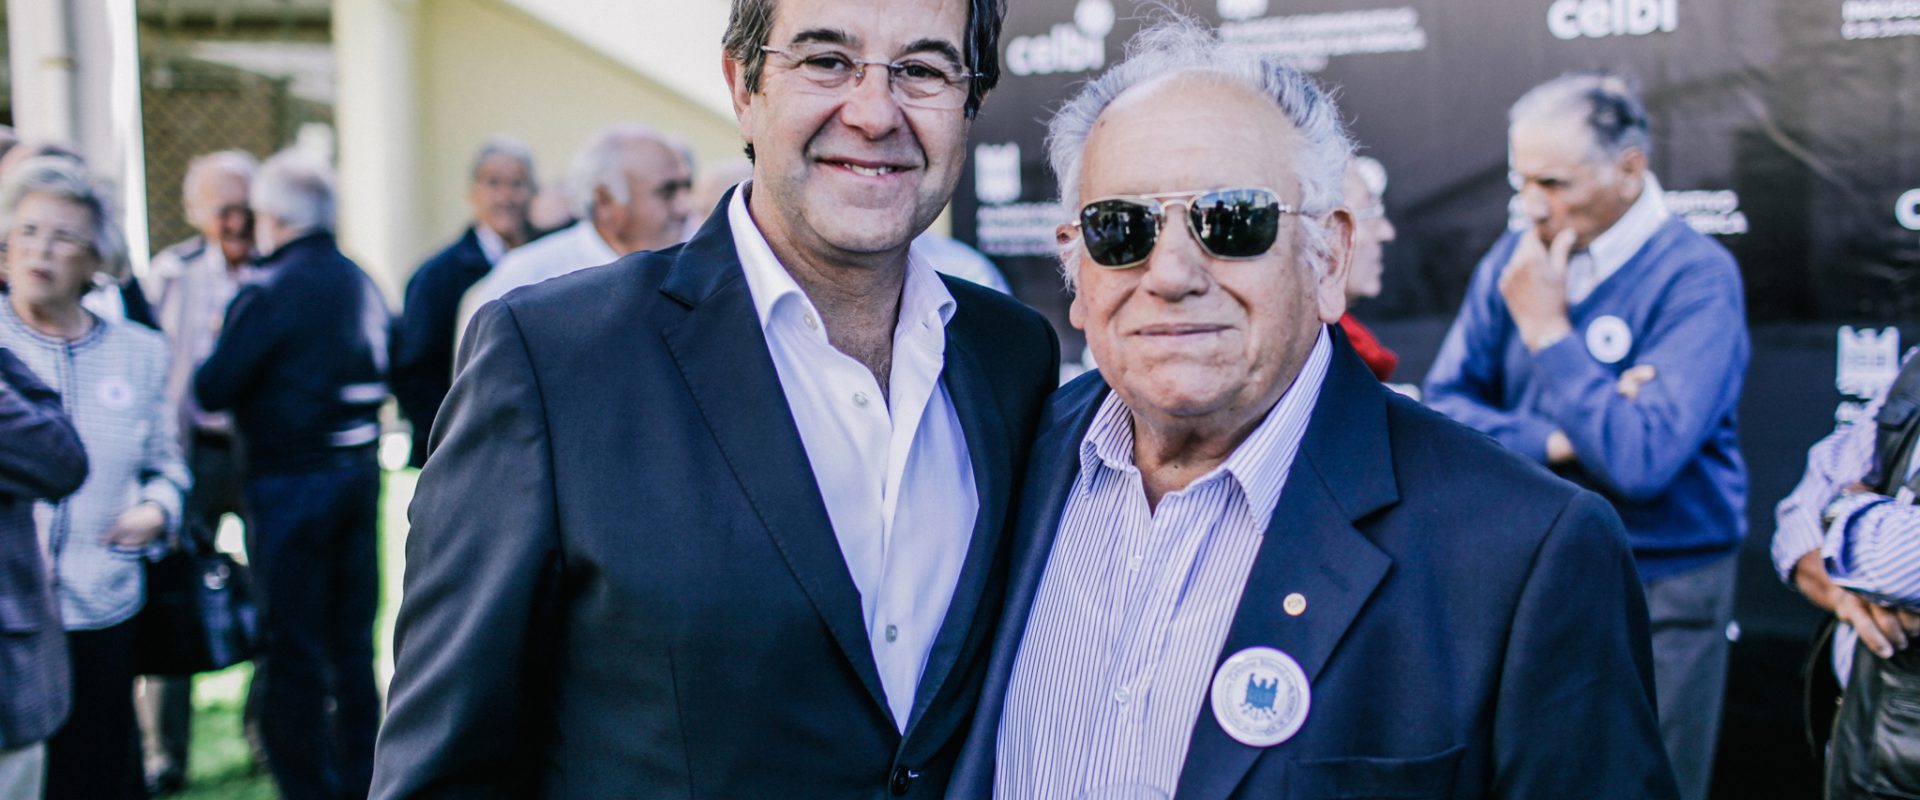 Nogueira Santos e José Gonçalves, ex-trabalhador da Celbi